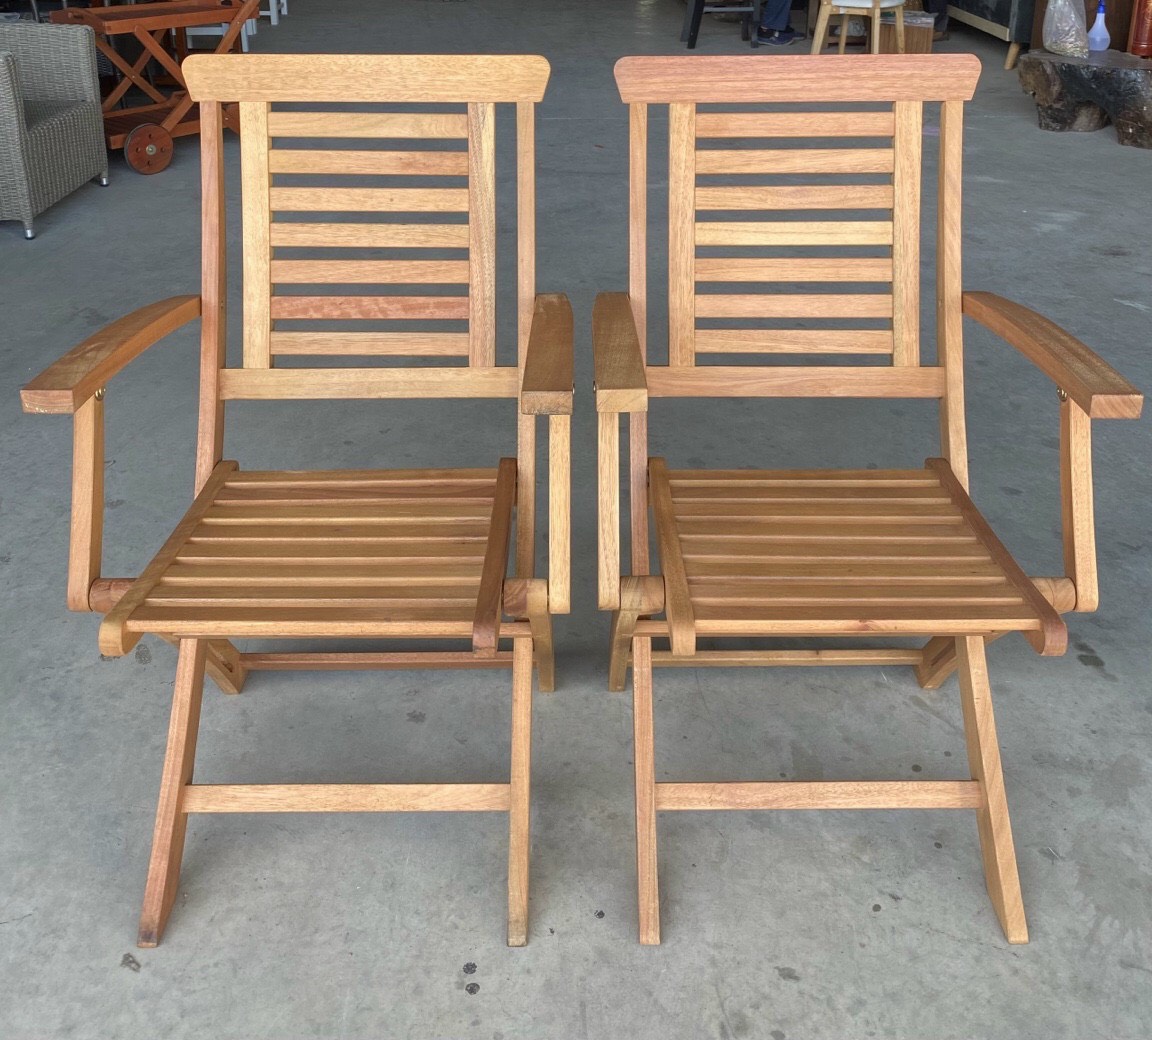 ghế xếp gỗ tràm, ghế xếp gỗ tràm có tay, ghế gỗ tràm cafe sân vườn, nơi bán ghế gỗ tràm giá rẻ